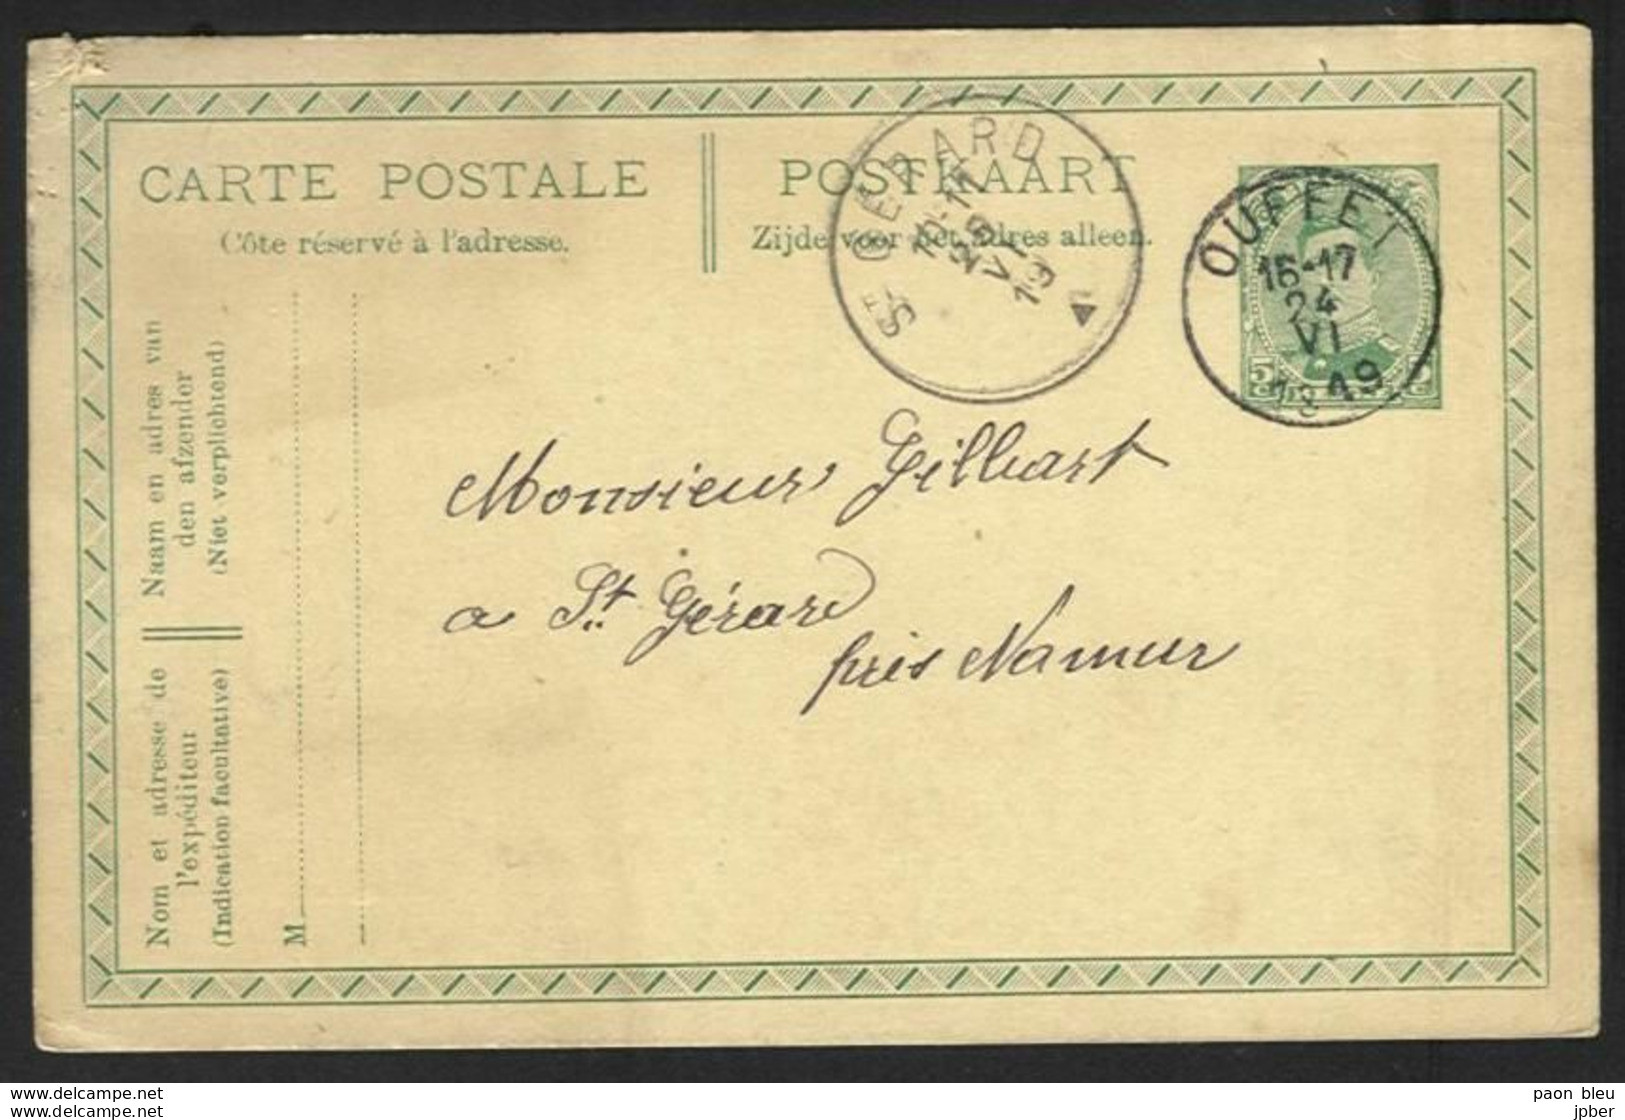 Belgique - Obl.fortune 1919 - Obl. OUFFET Siècle Gratté + Cachet St Gérard - Foruna (1919)